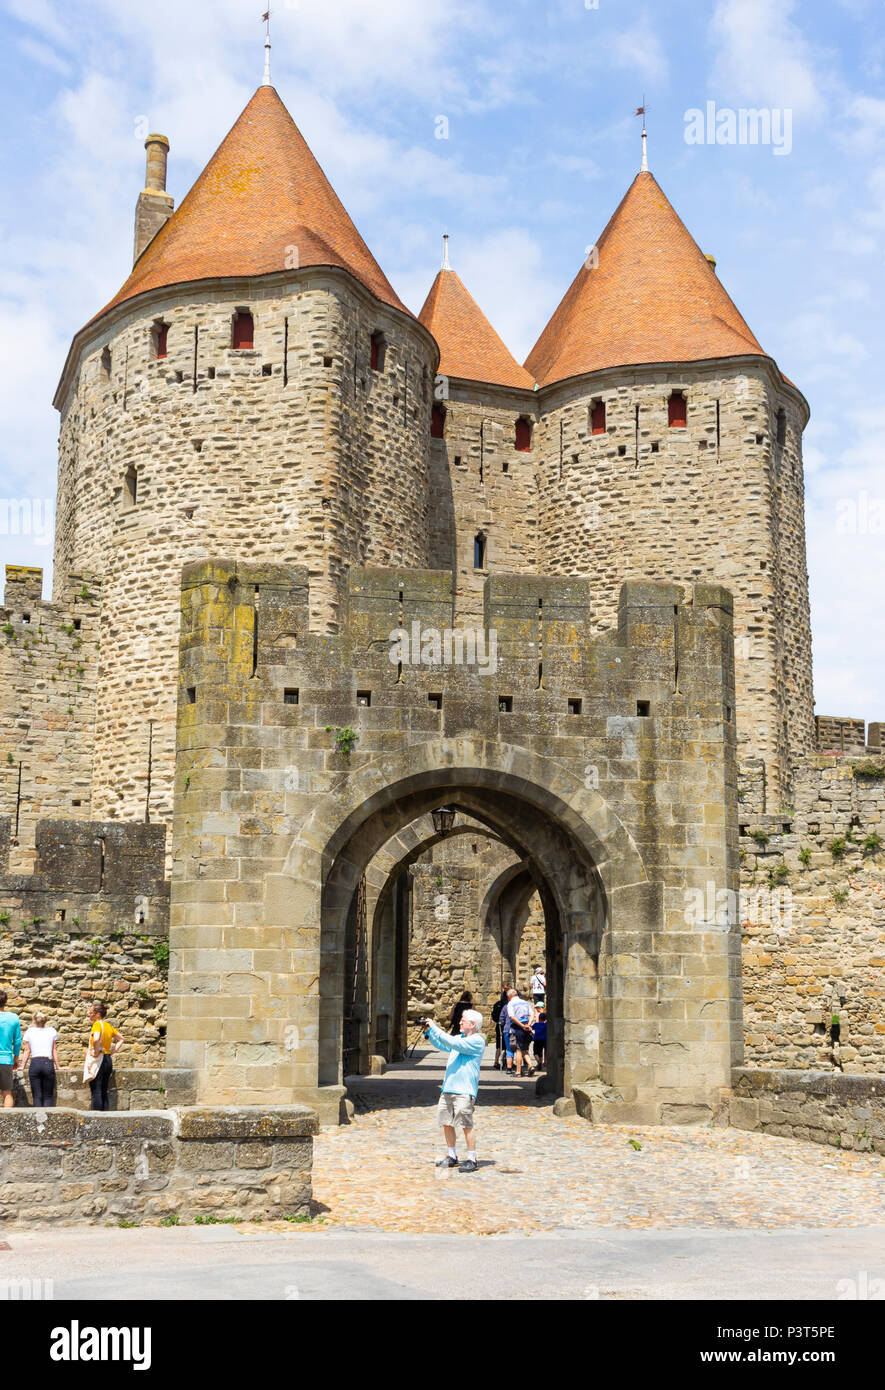 La Cité médiévale de Carcassonne, département français de l'Aude, l'Occitanie, région de France. La porte Narbonnaise. Banque D'Images